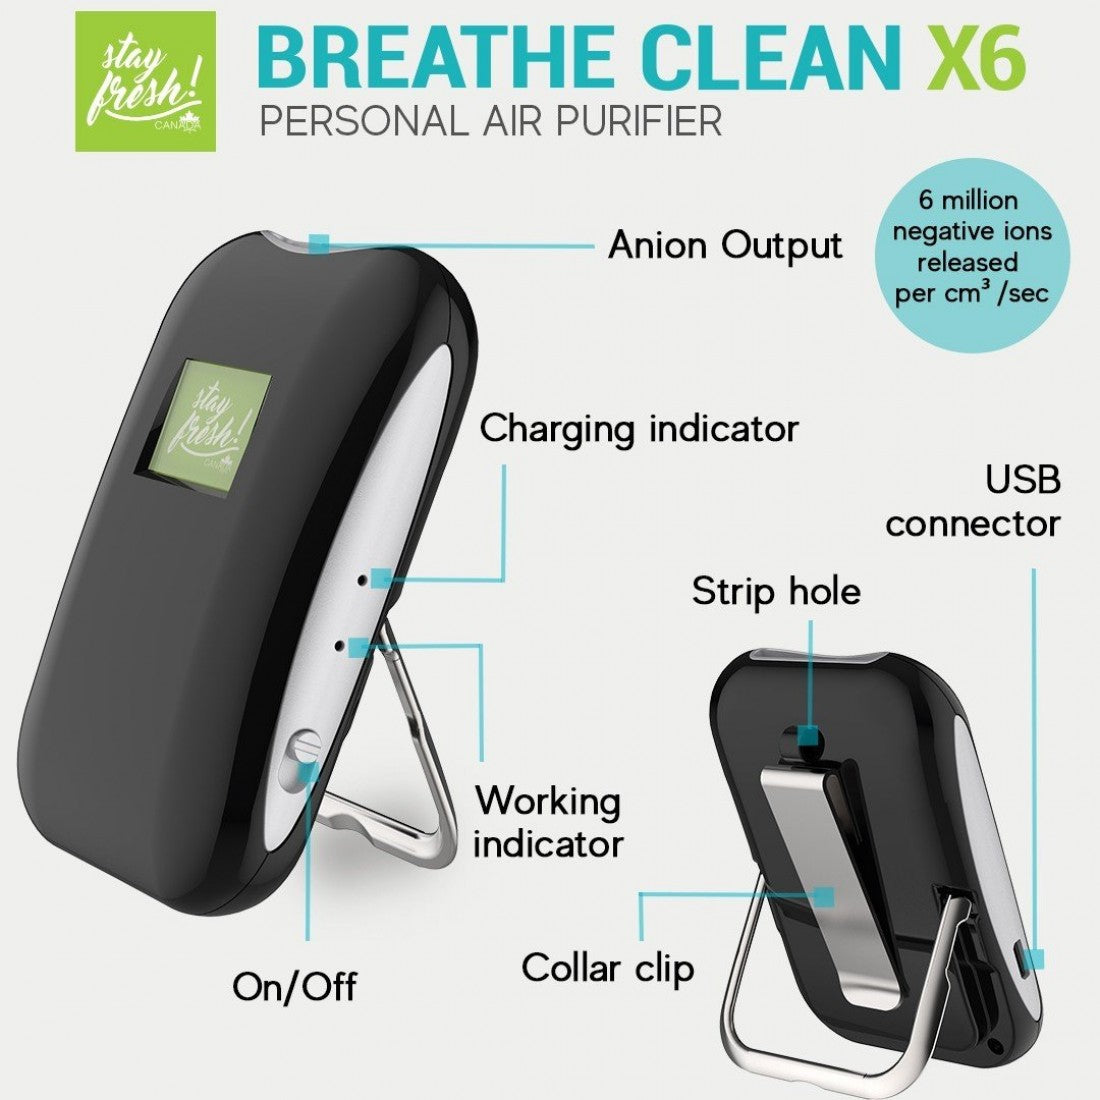 Stayfresh Canada Breathe Clean X6 Personal Air Purifier